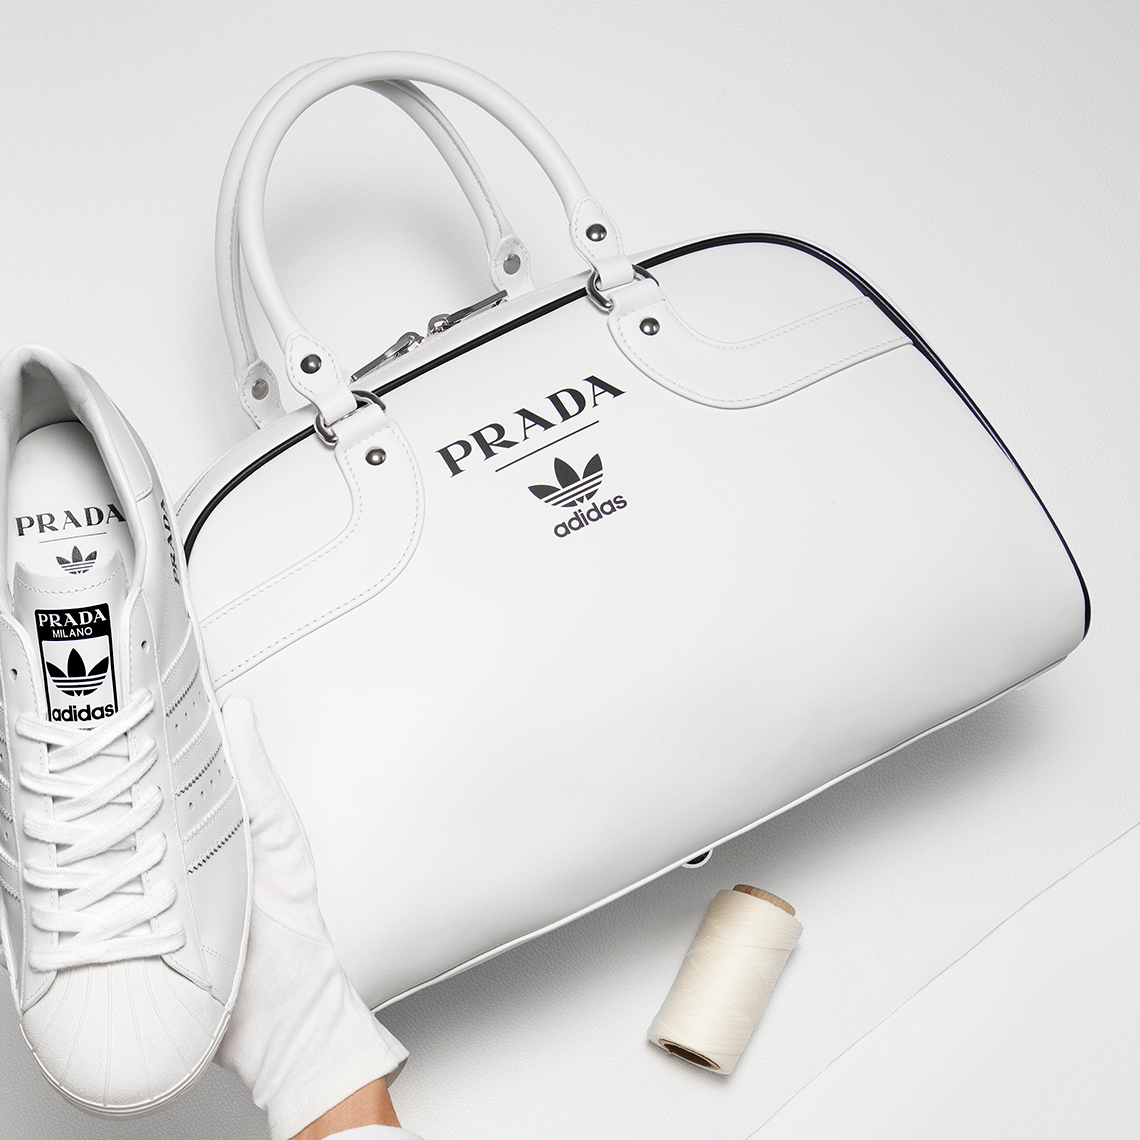 Prada hợp tác cùng adidas vinh danh 2 thiết kế iconic của nhau | #HNBMG